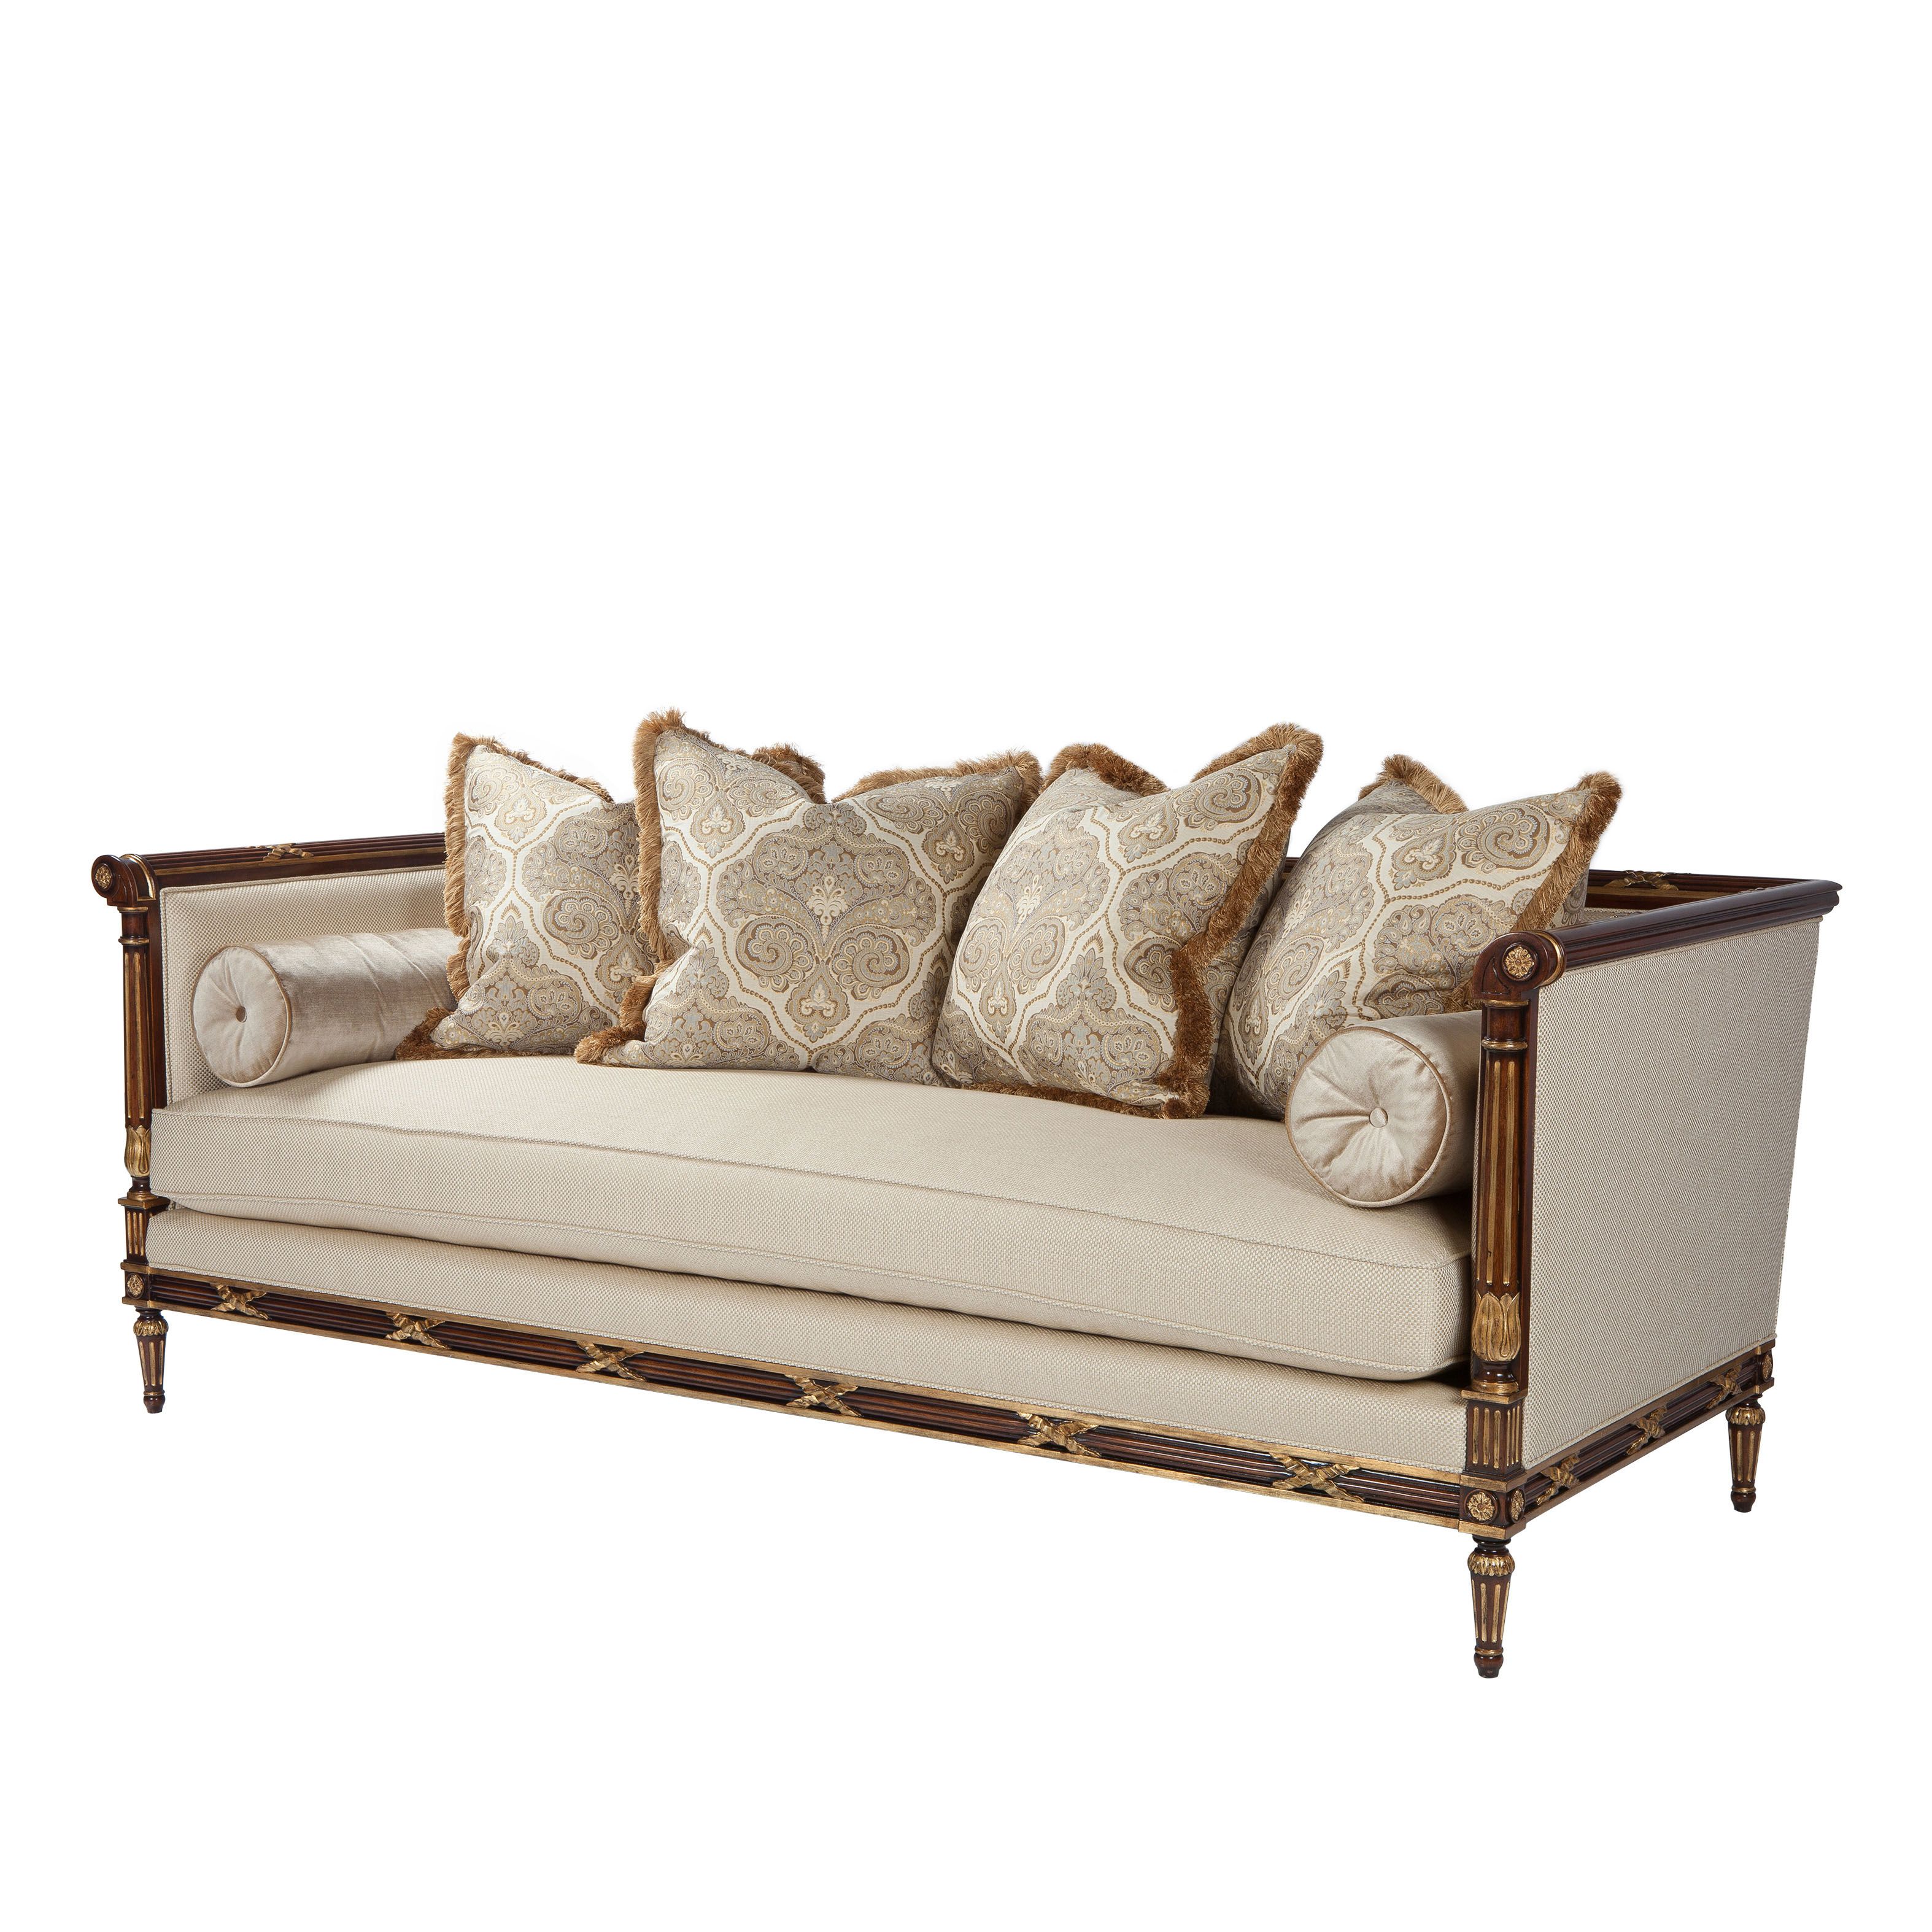 beautiful and ornate sofa